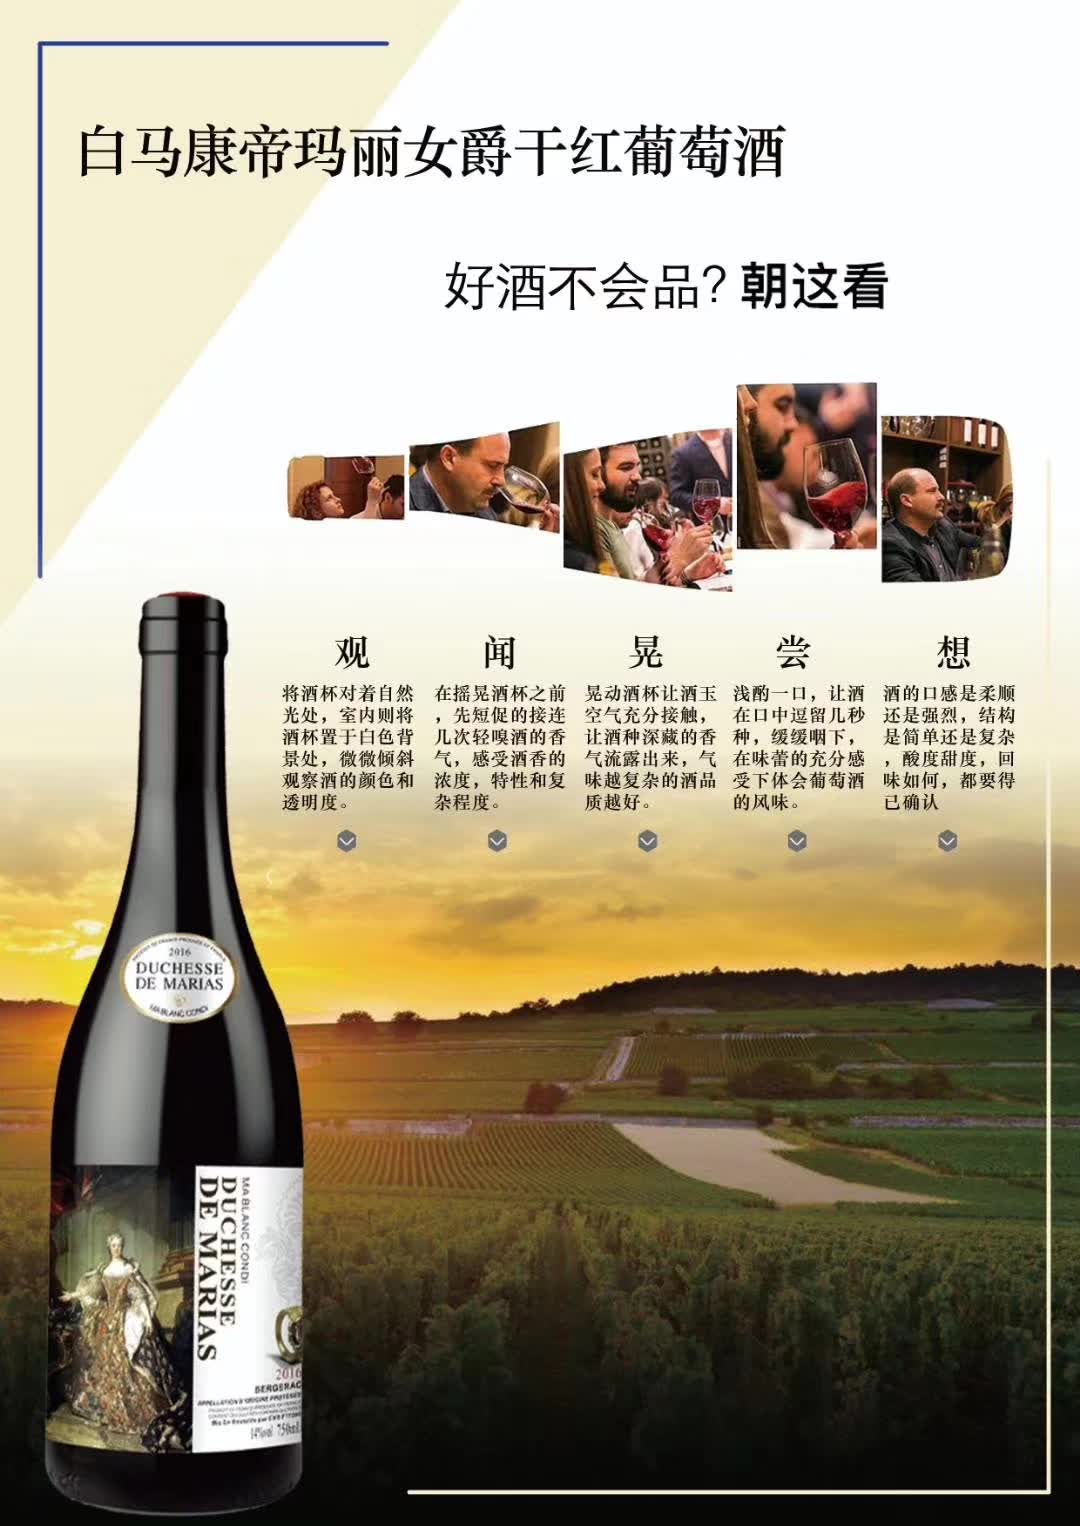 上海万耀白马康帝系列玛丽女爵法国AOP级别进口酒货源混酿葡萄酒